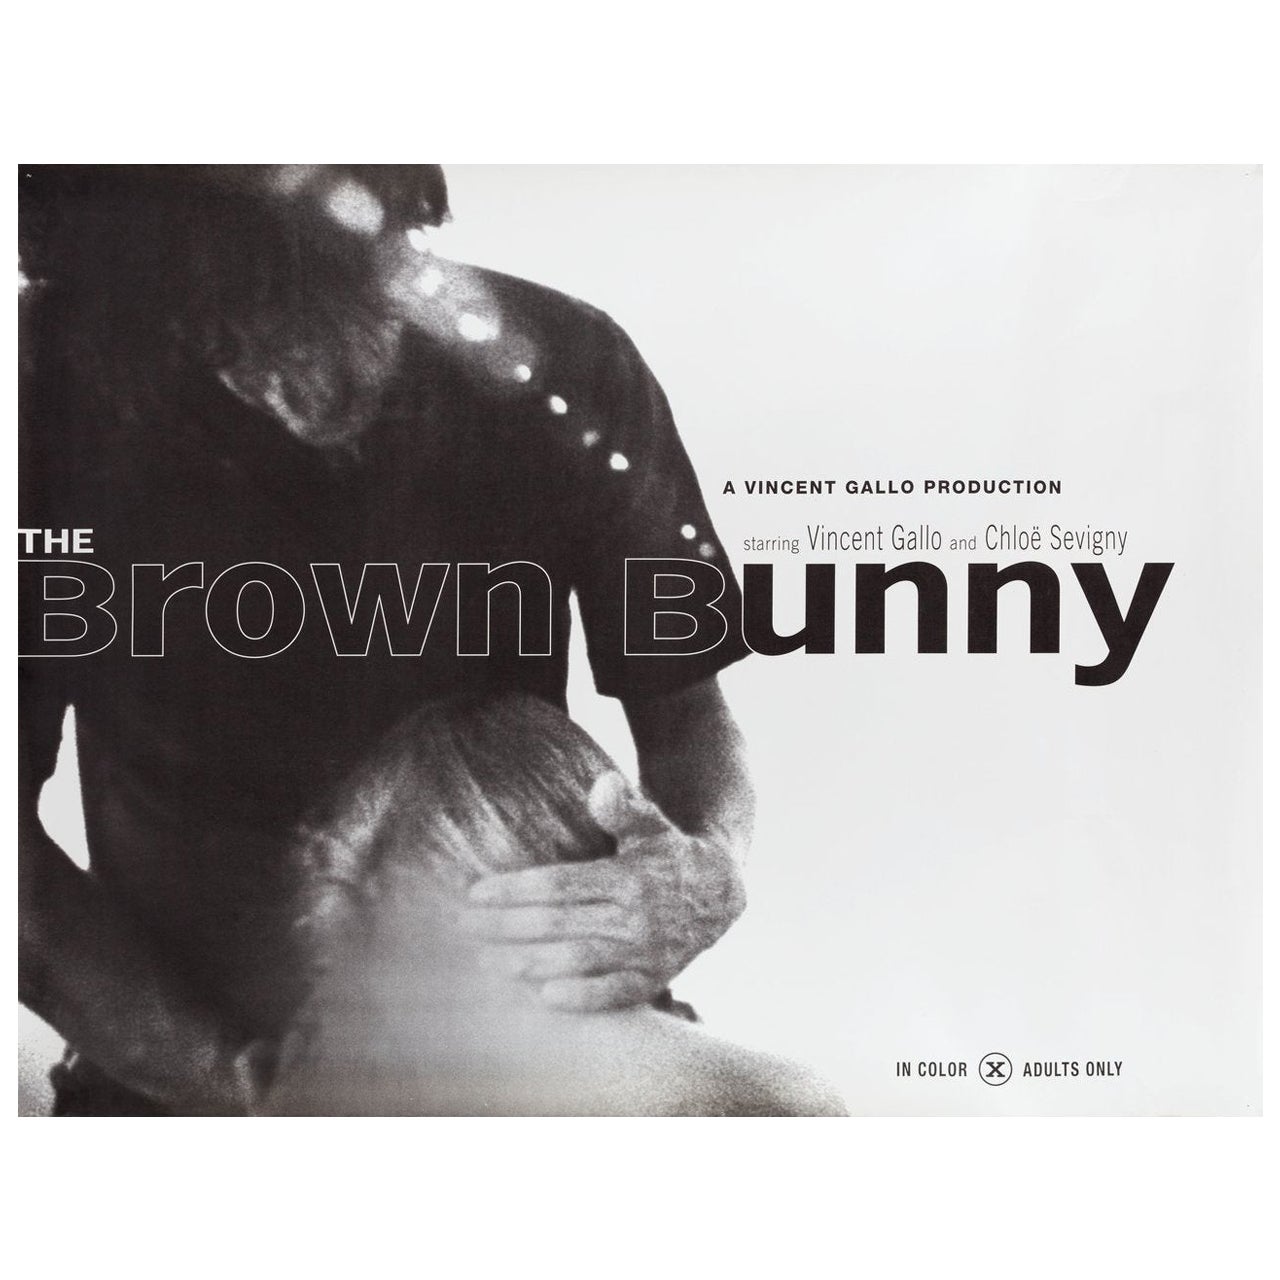 „The Brown Bunny“, U.S. Subway-Filmplakat, 2003